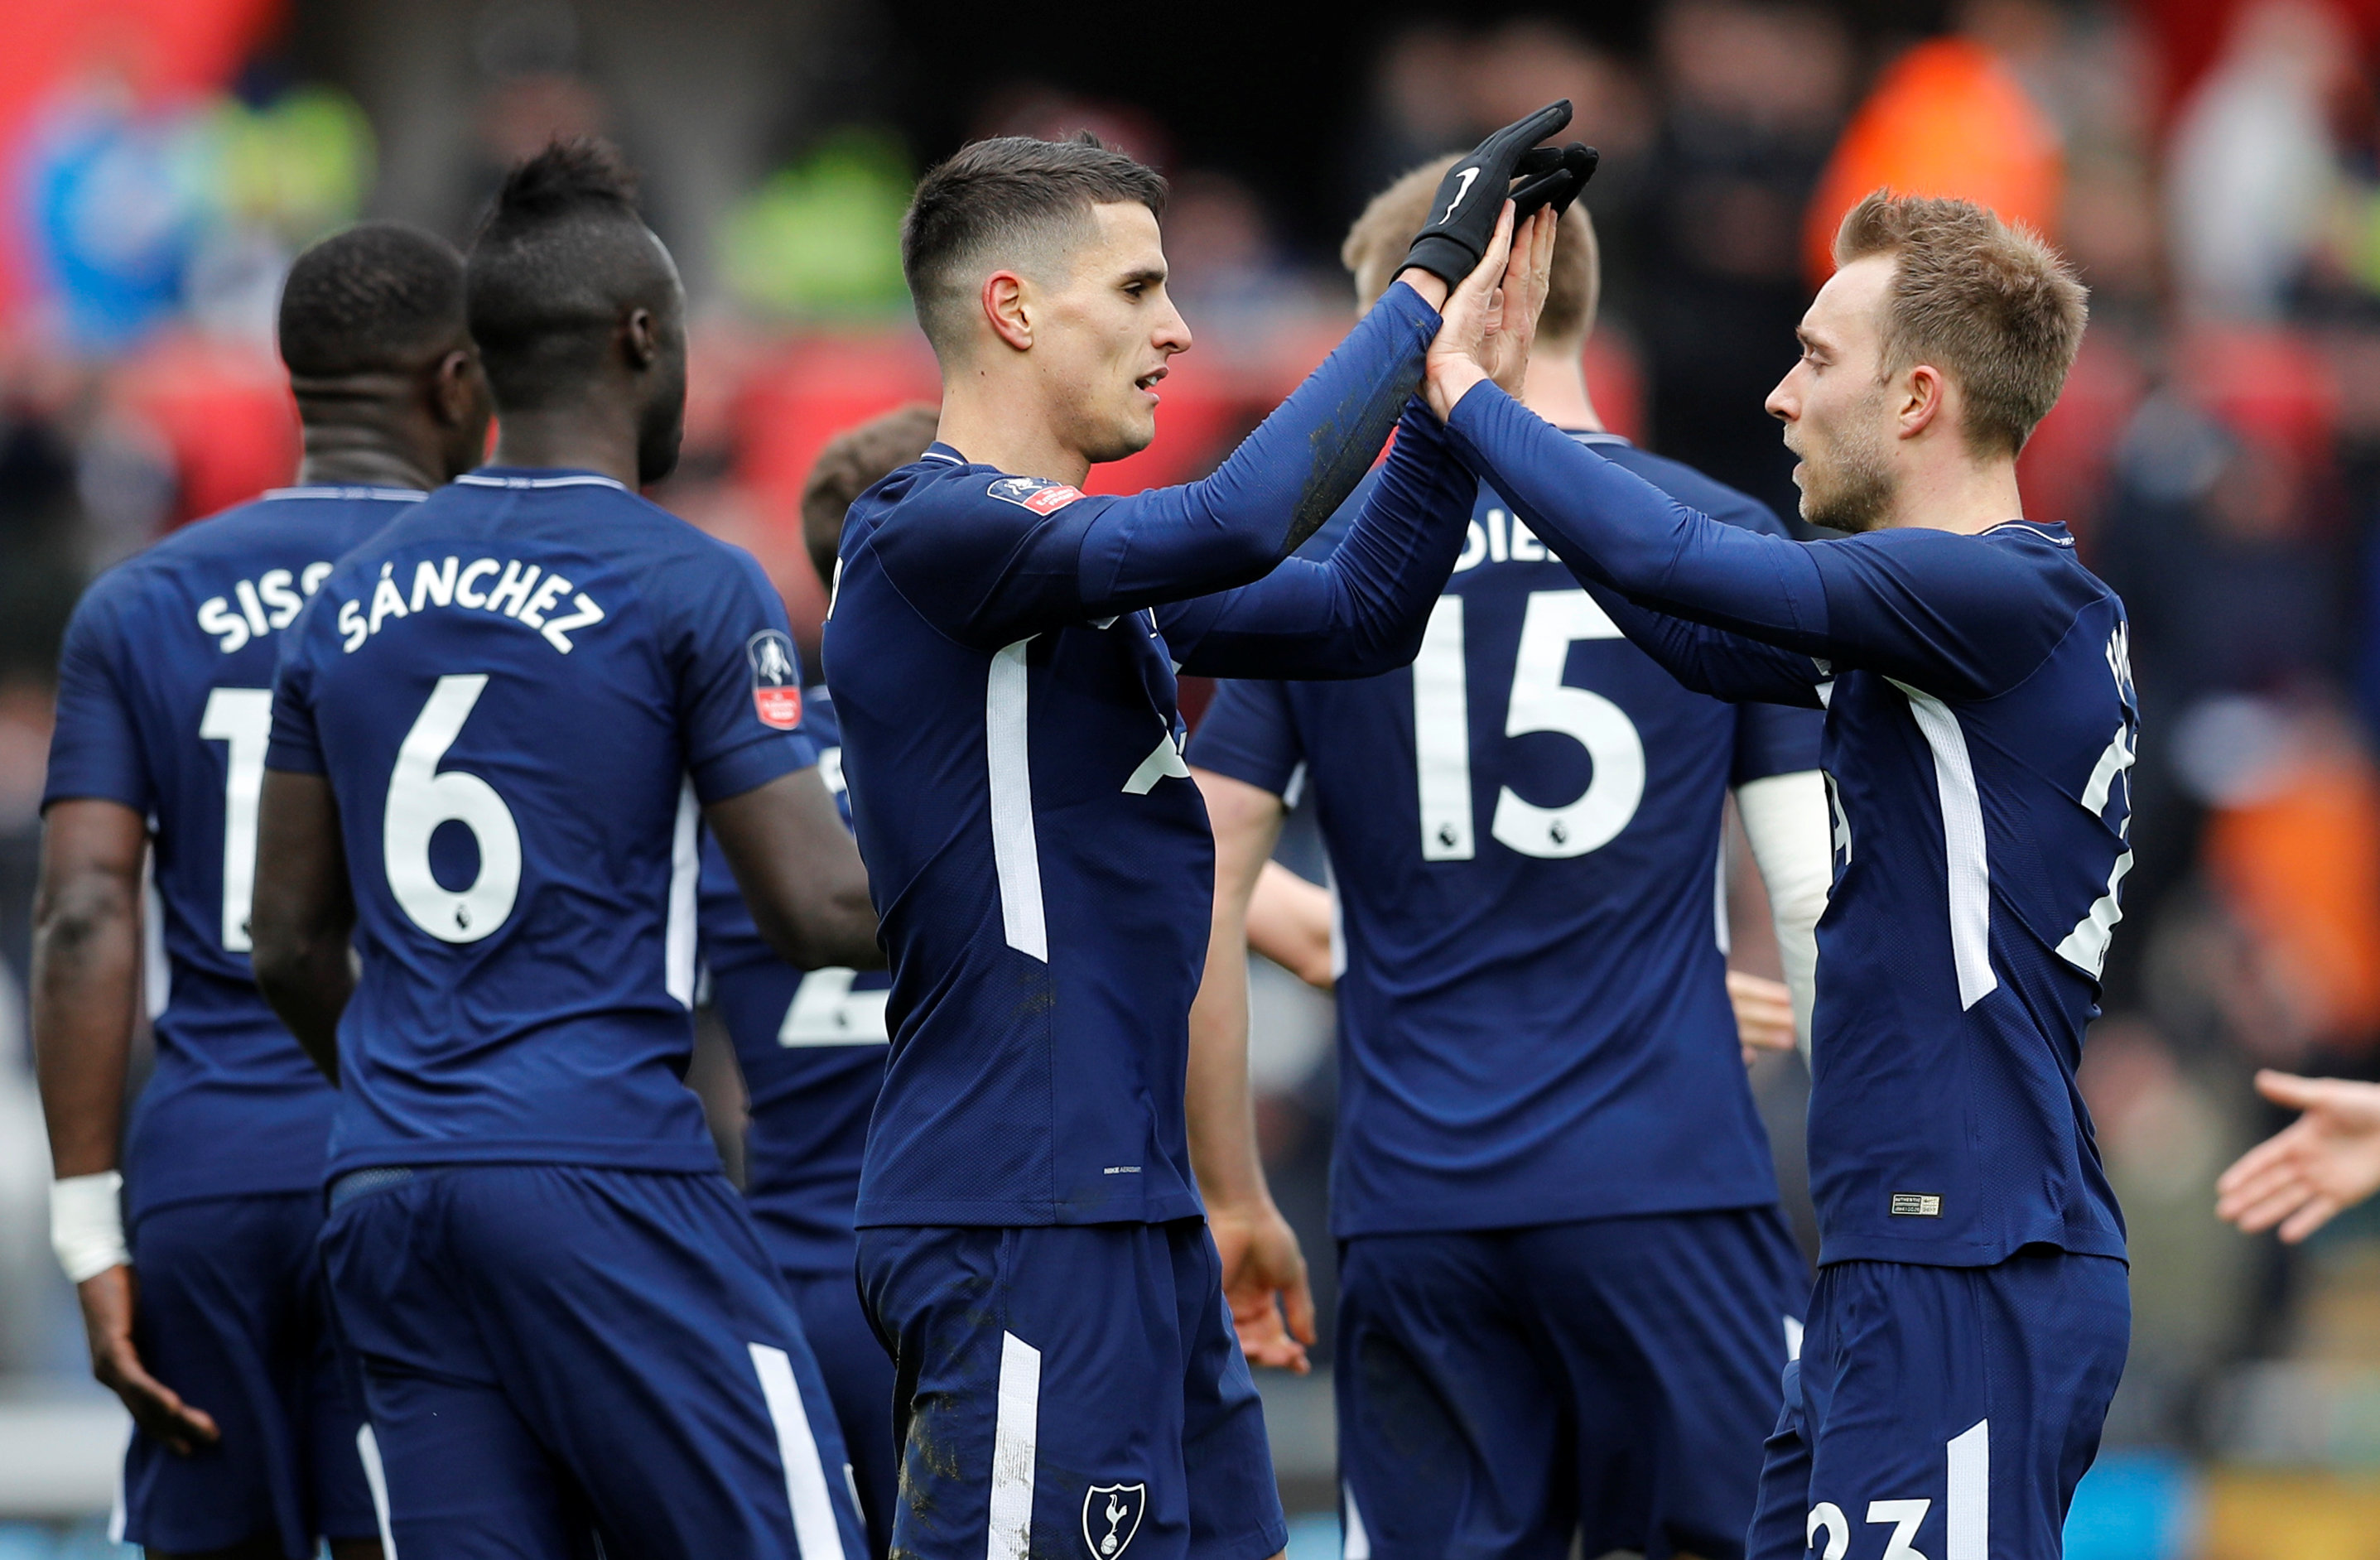 Niềm vui của các cầu thủ Tottenham sau khi Lamela (giữa) nâng tỉ số lên 2-0. Ảnh: REUTERS